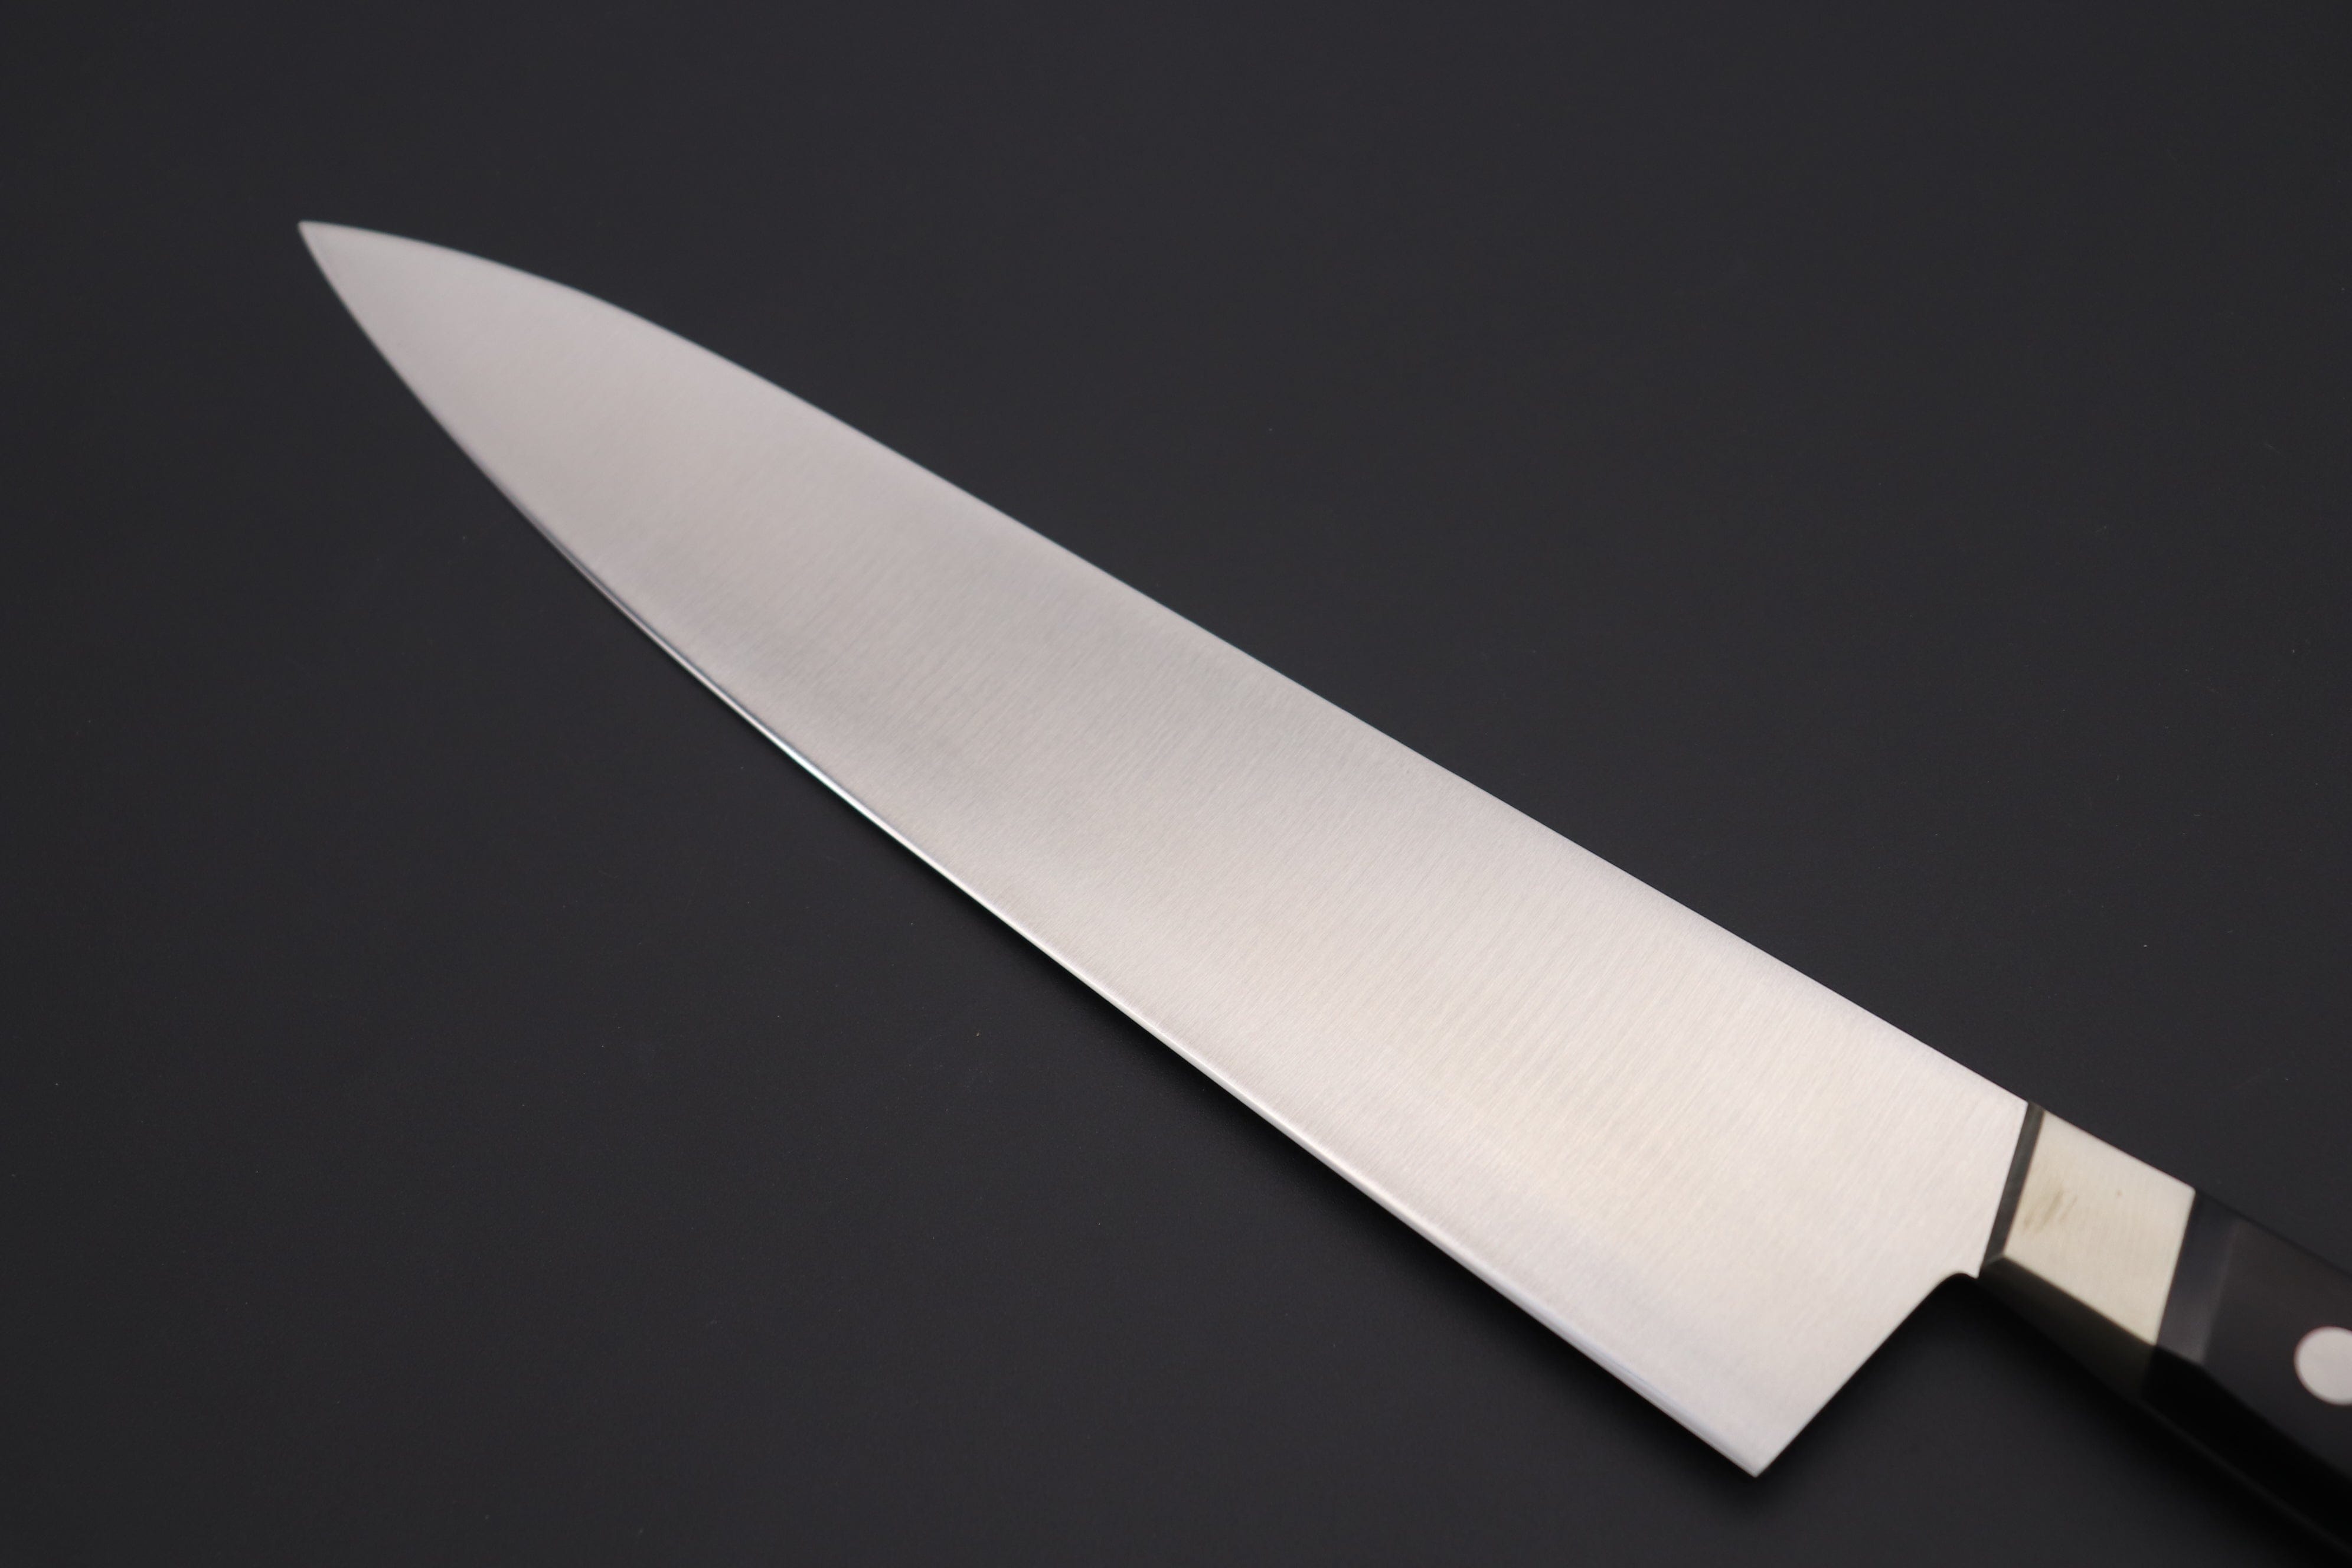 Couteau de chef japonais - Gyuto - MISONO - EU Carbon Serie